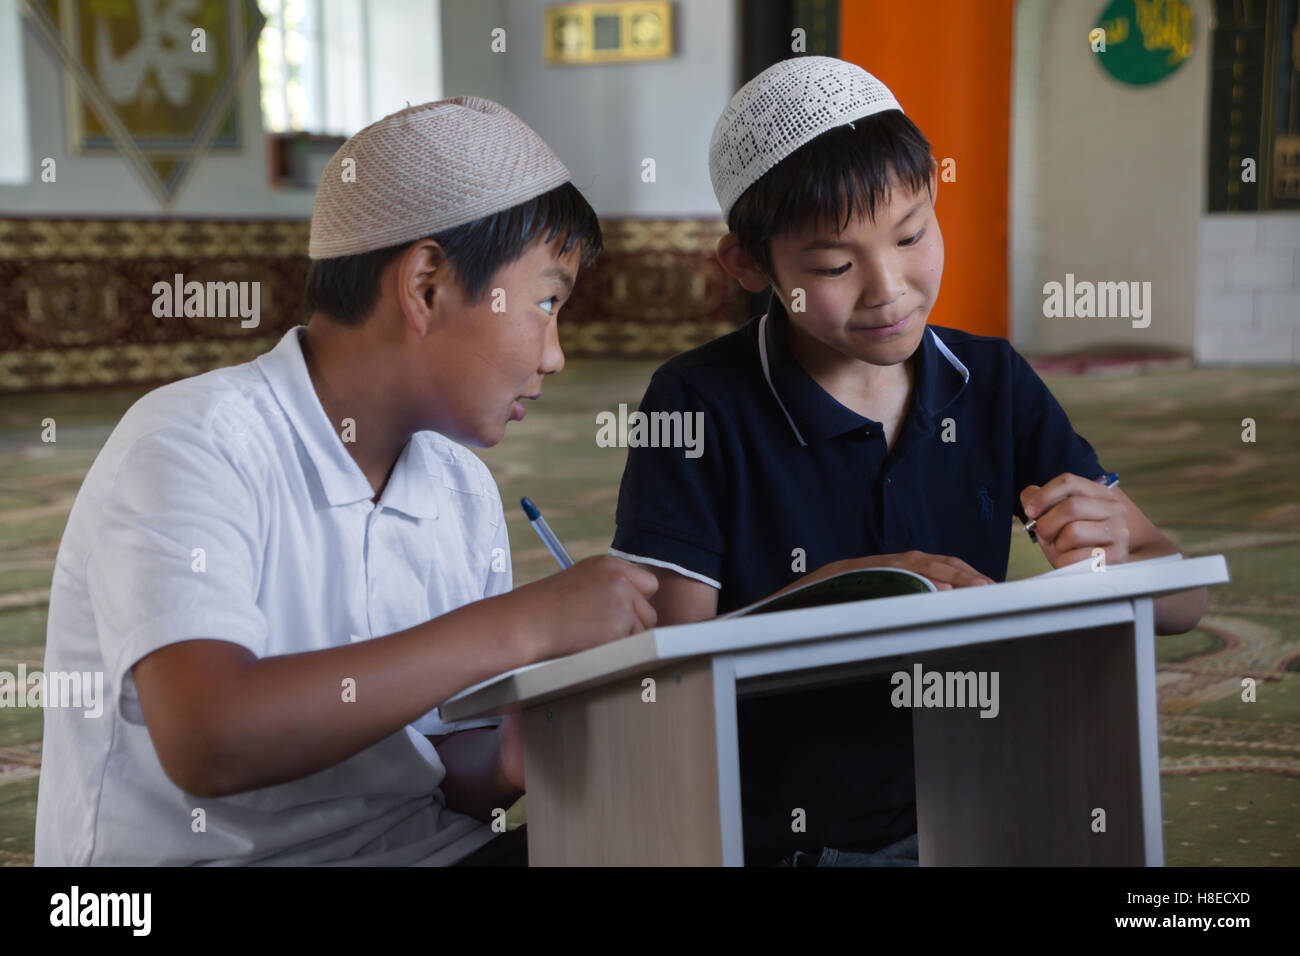 Kirghizistan - photos de garçons à l'école islamique, medressa Voyage Asie centrale - gens Banque D'Images